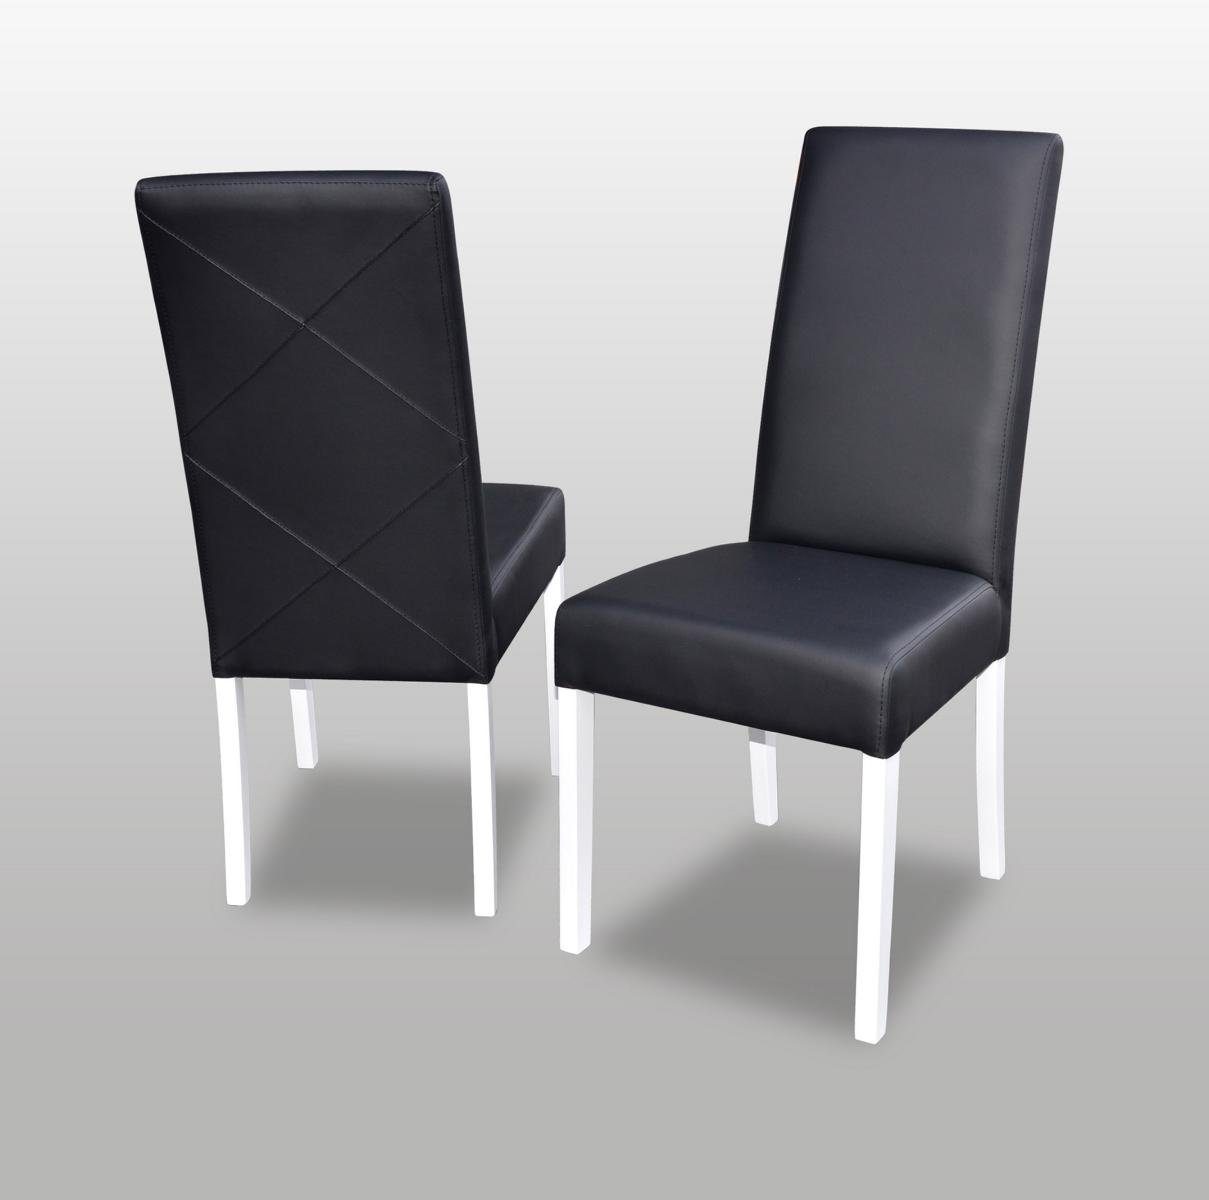 JVmoebel Stuhl, Stuhl 1x Ess Club Sessel Zimmer Polsterstuhl Designer Neu Holz Lounge Stühle